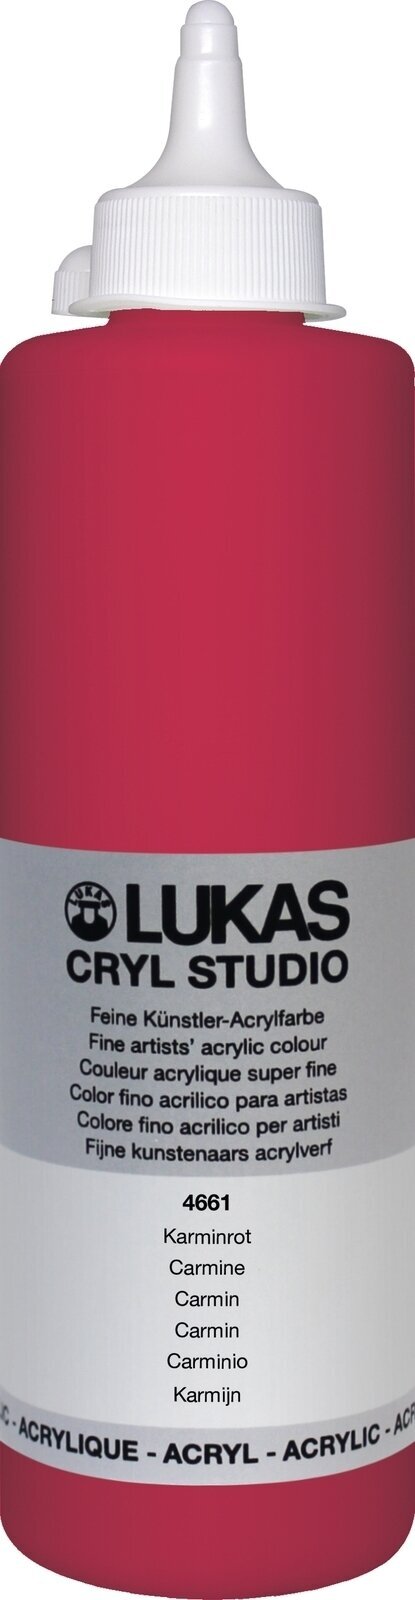 Acrylic Paint Lukas Cryl Studio Acrylic Paint 500 ml Carmine